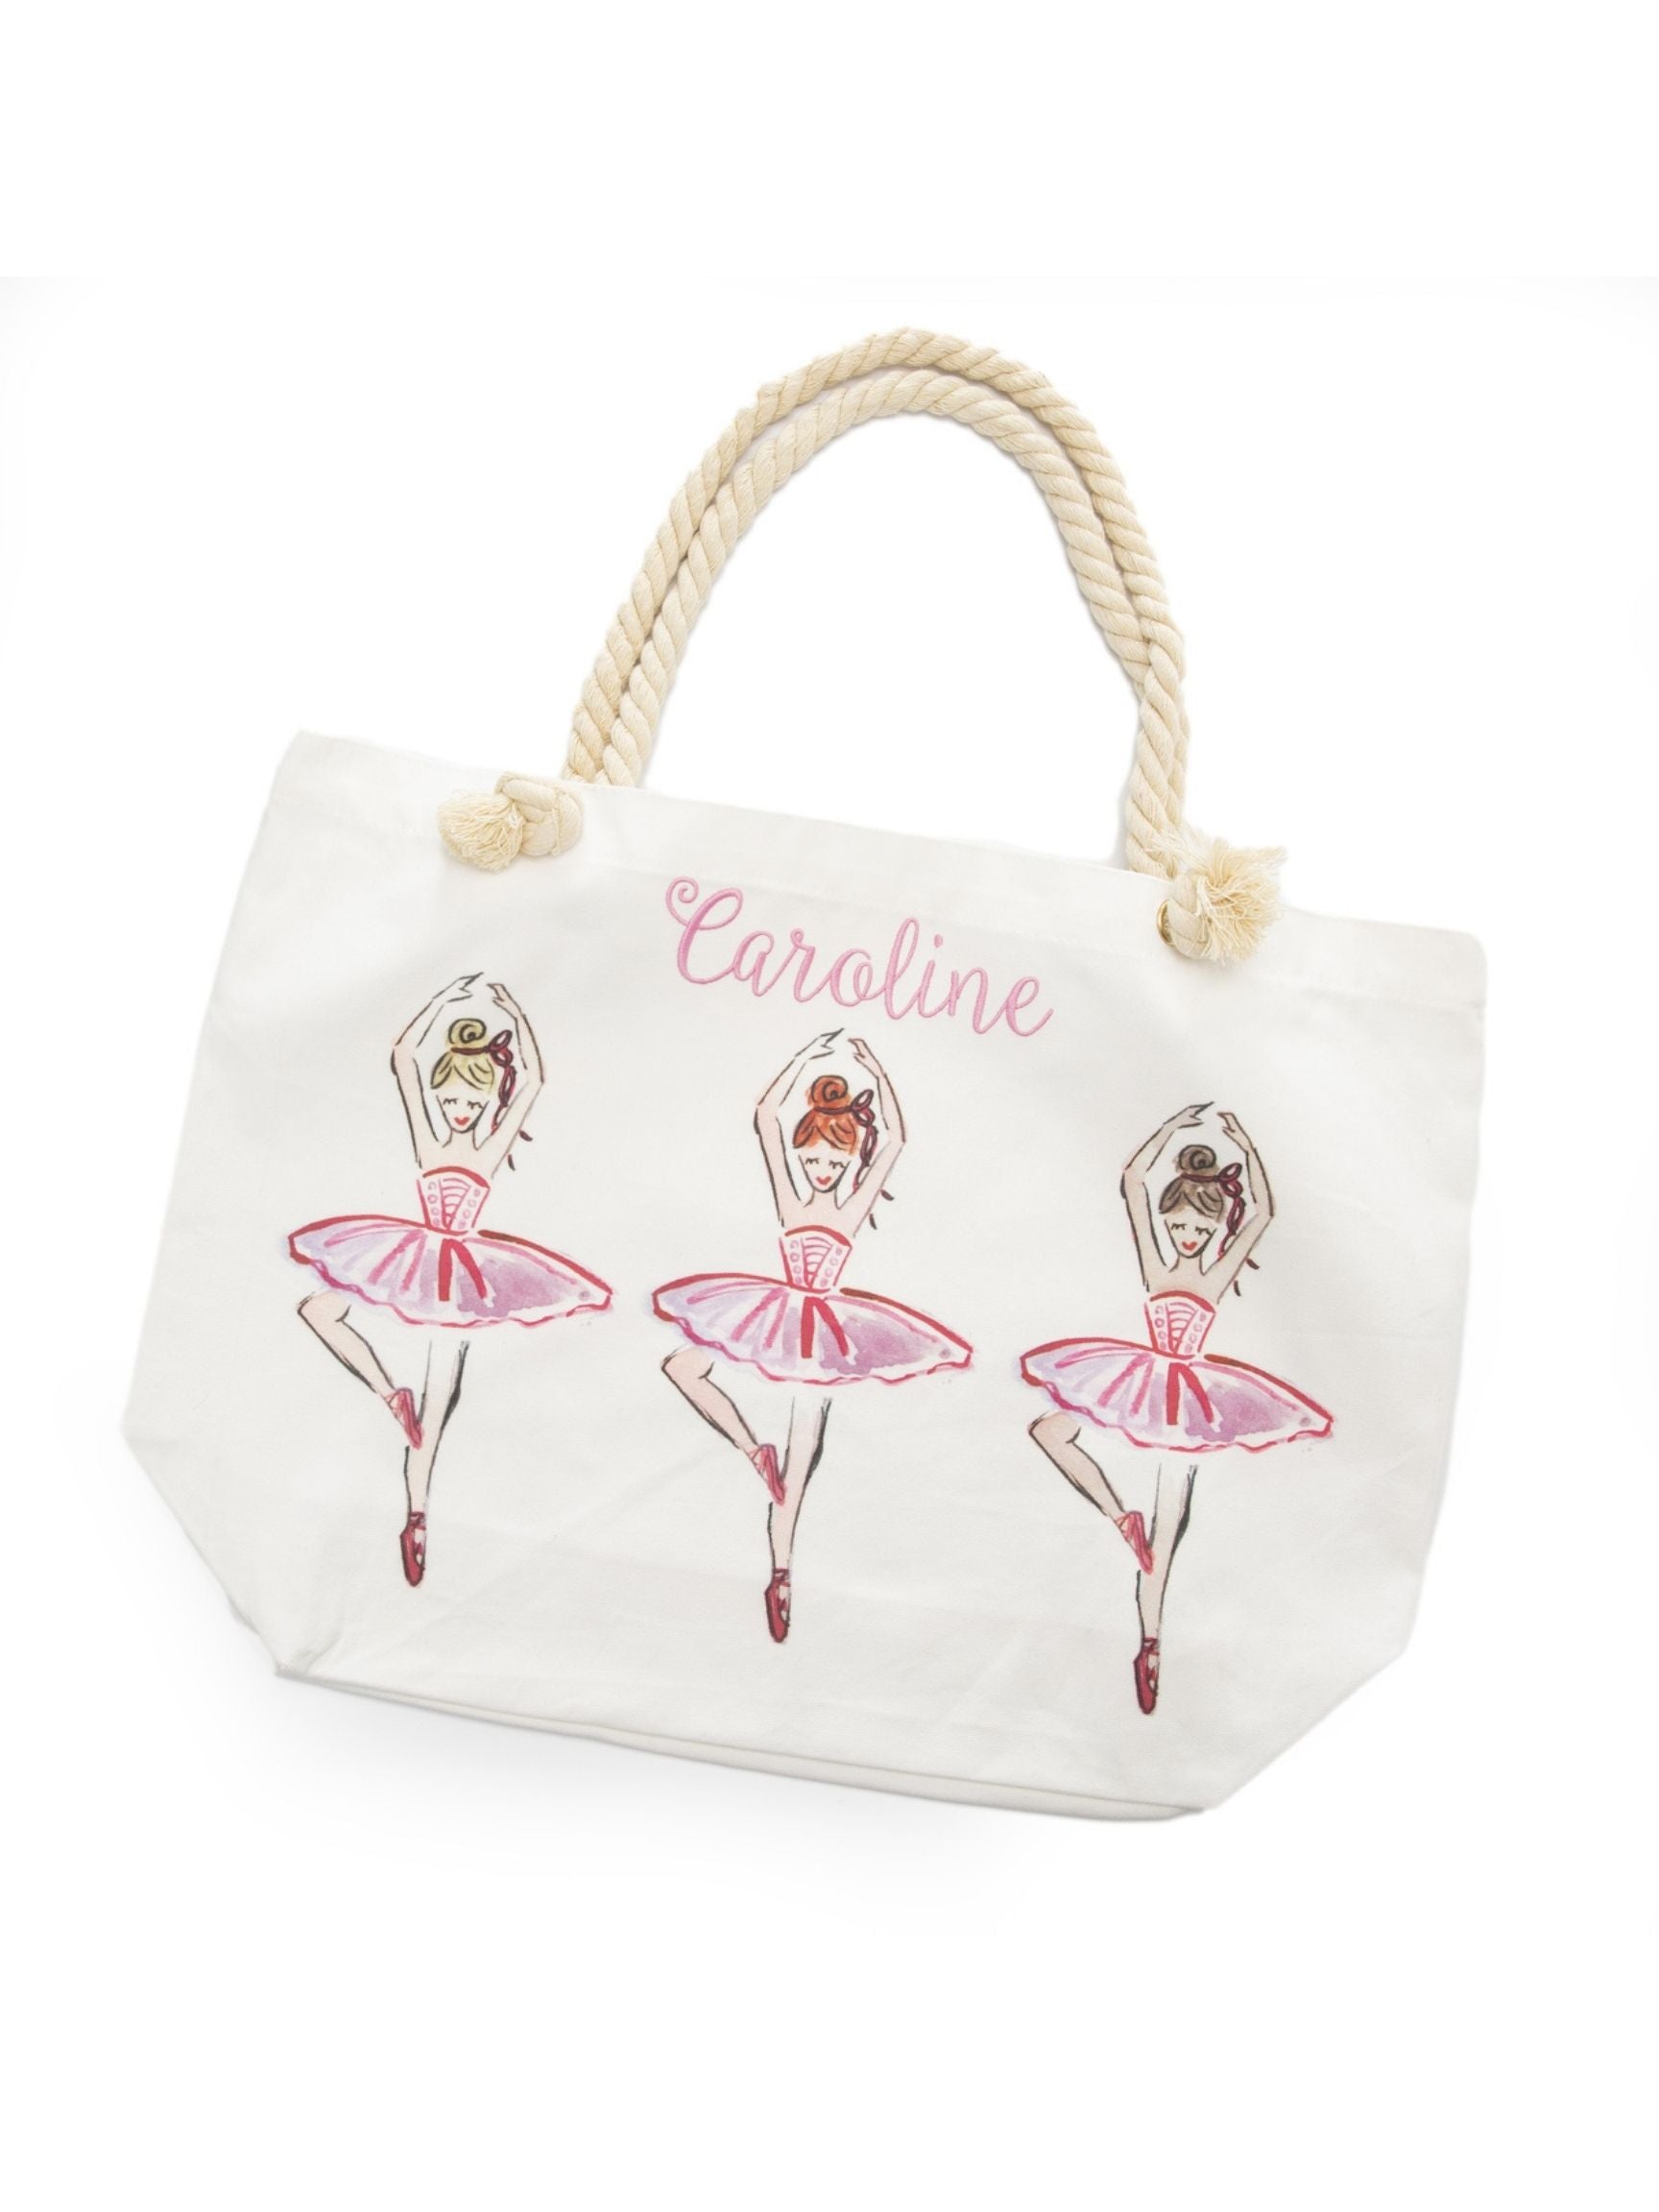 Kids Girls Ballet Bag Ruffle Dance Backpack Cute Dance Bag Decoration  Lovely | eBay